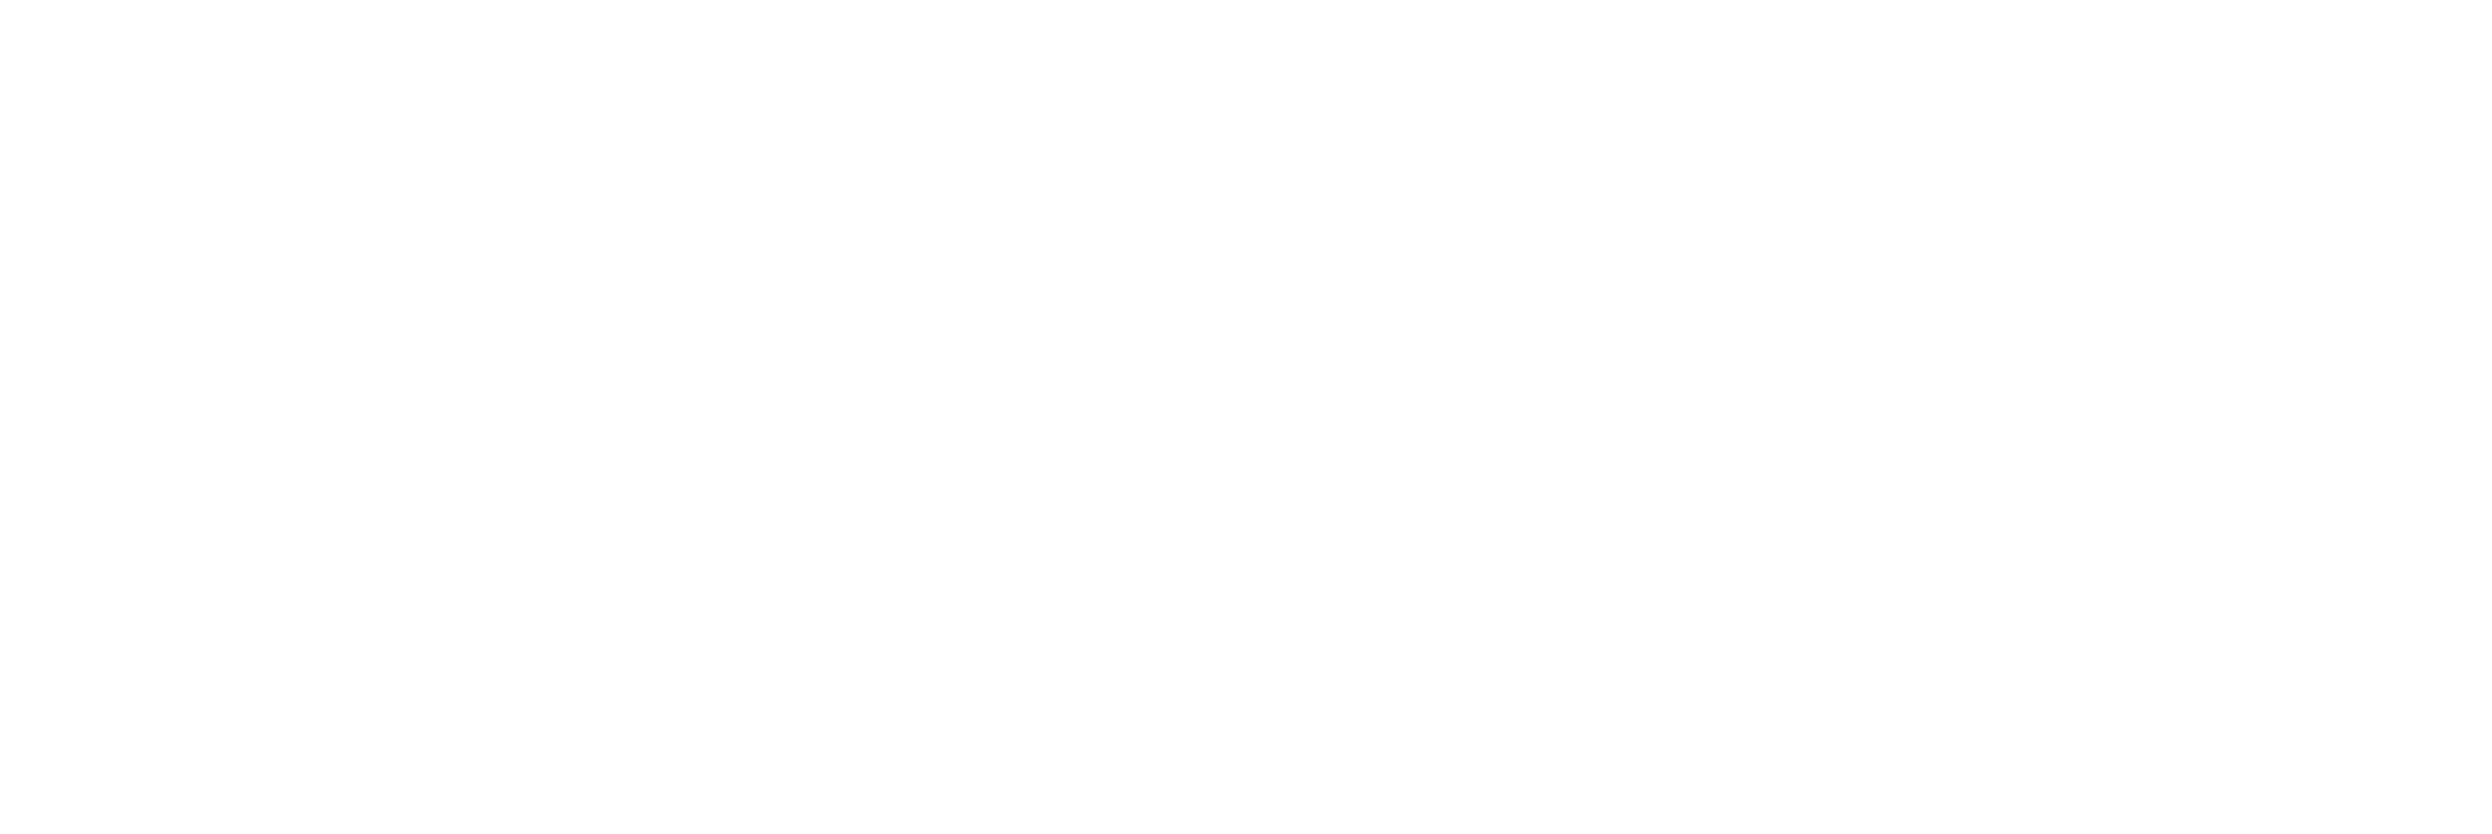 Silicon Valley Tech Academy